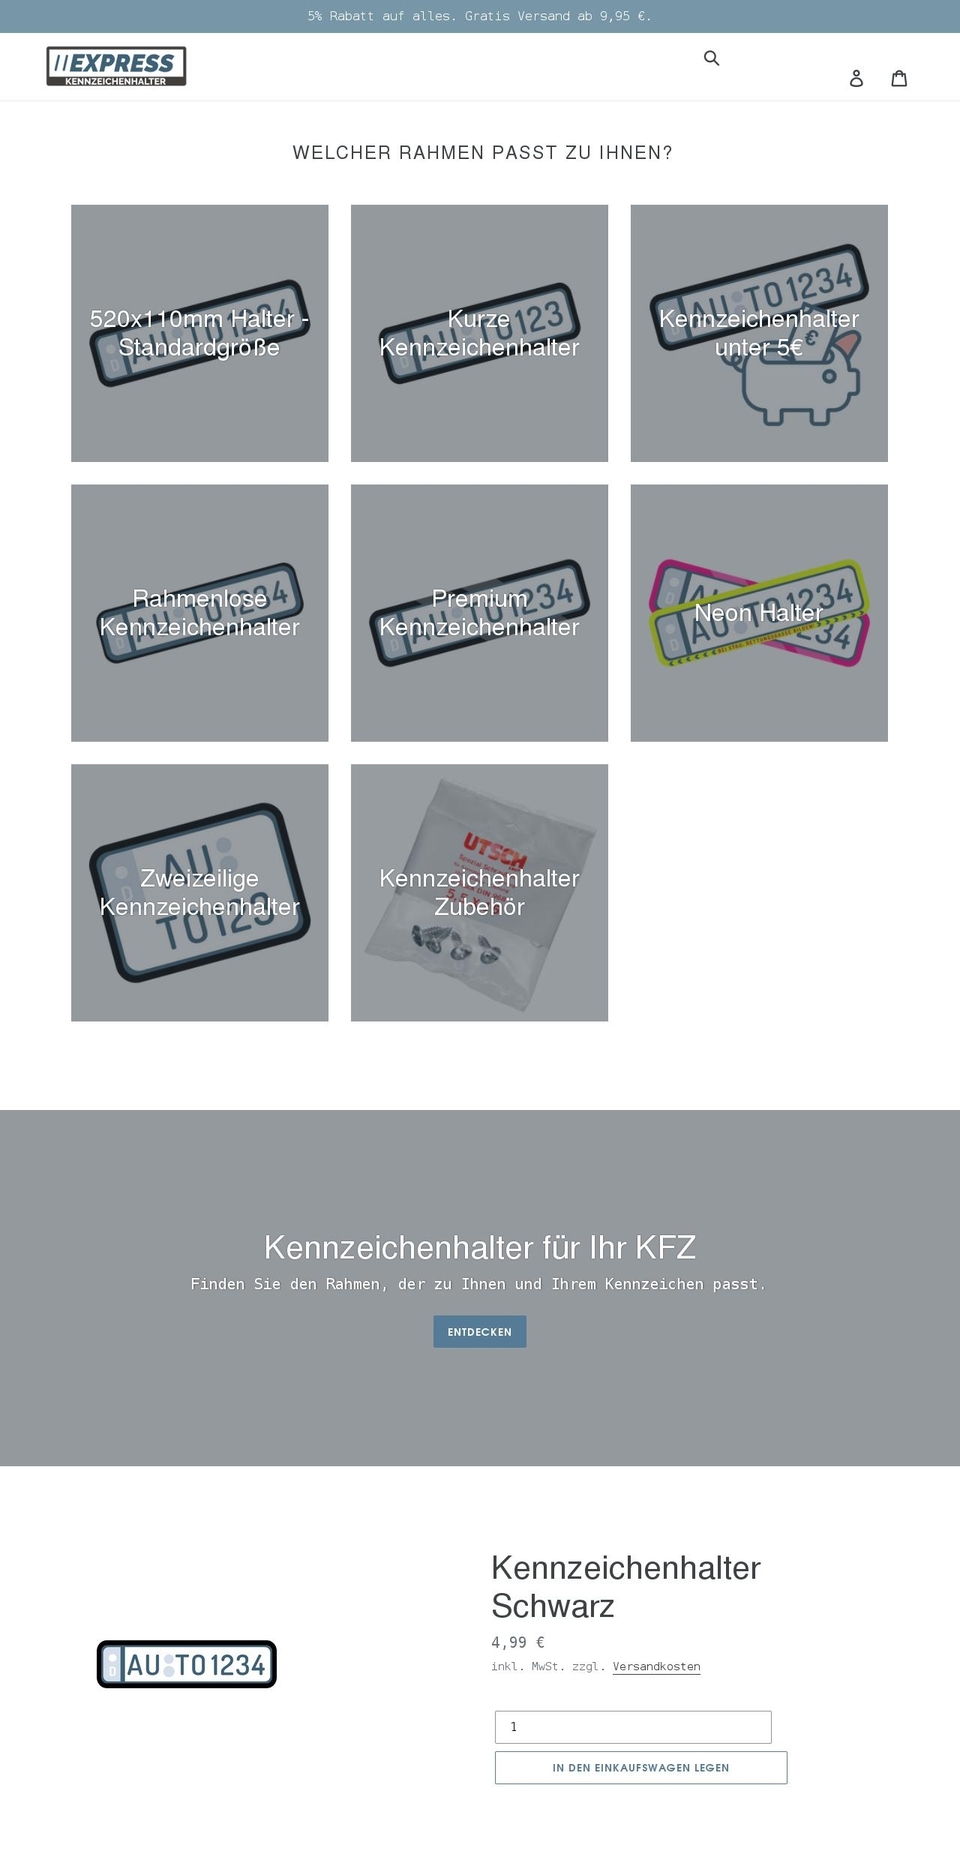 kennzeichenhalter.express shopify website screenshot